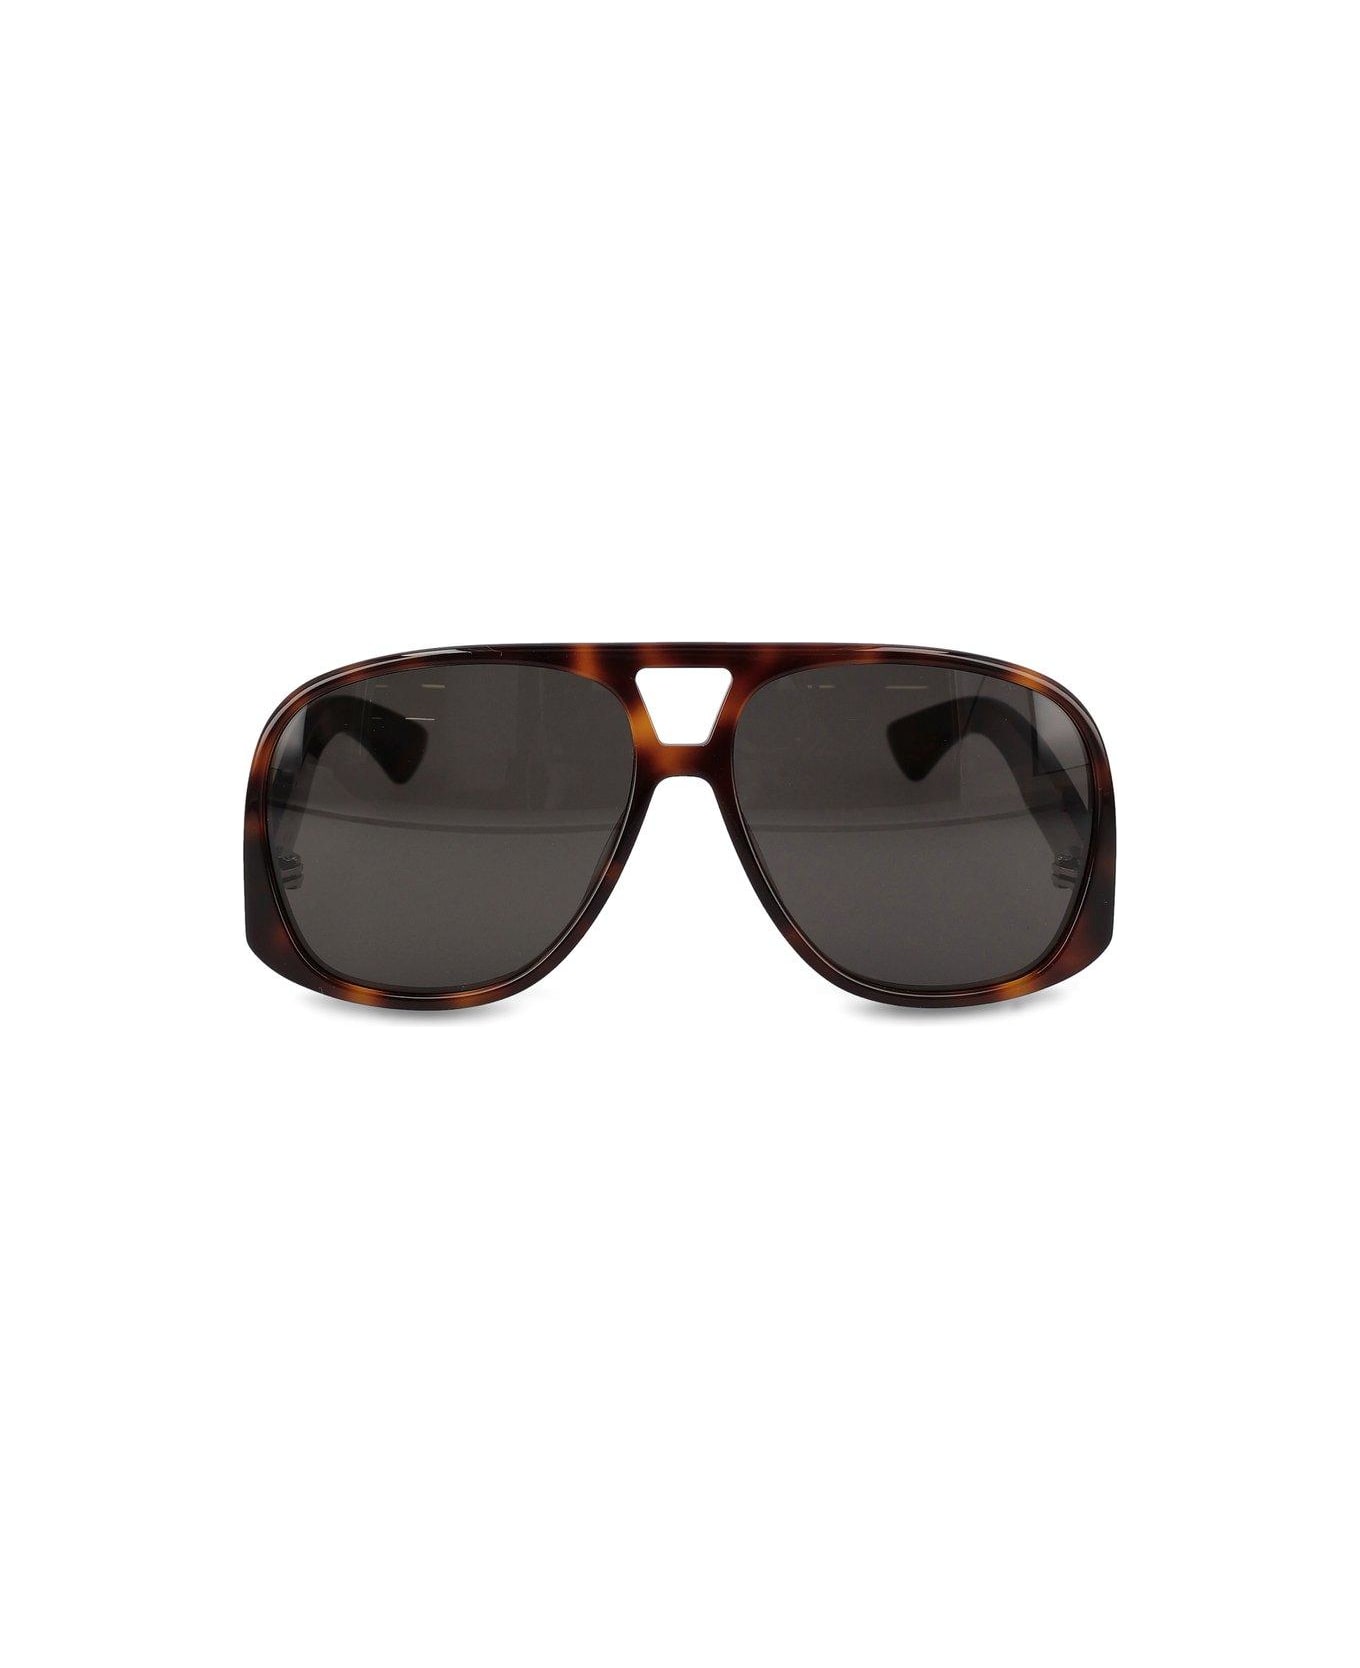 Saint Laurent Eyewear Sl 652 Solace Sunglasses - Havana/havana/black サングラス